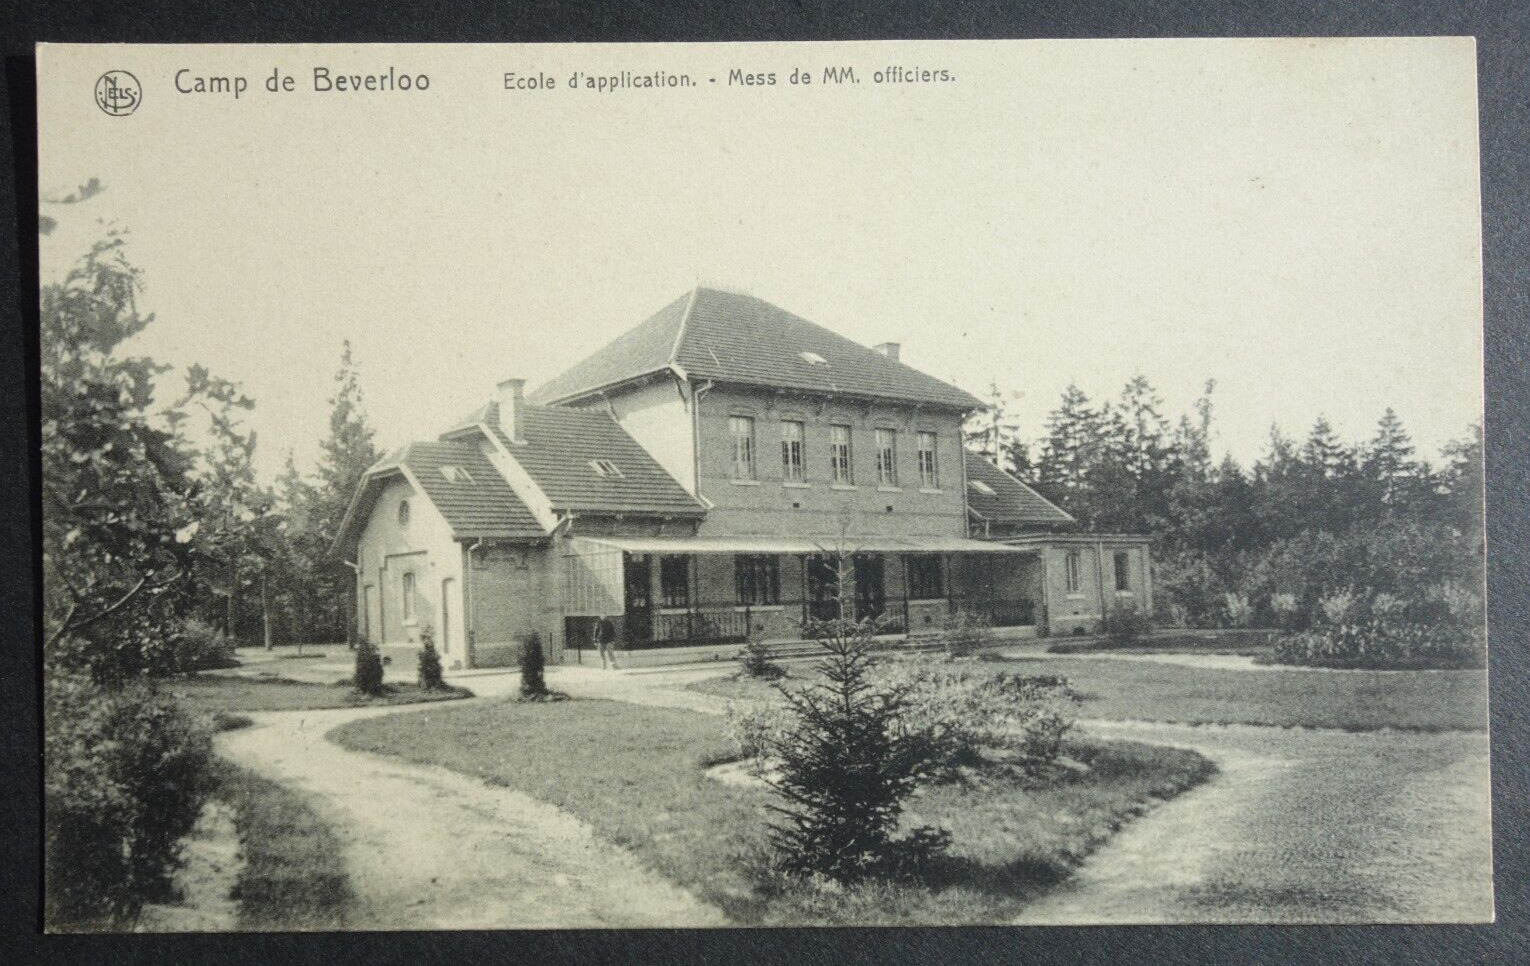 Camp de Beverloo, École d\'application, officer mess BELGIUM postcard